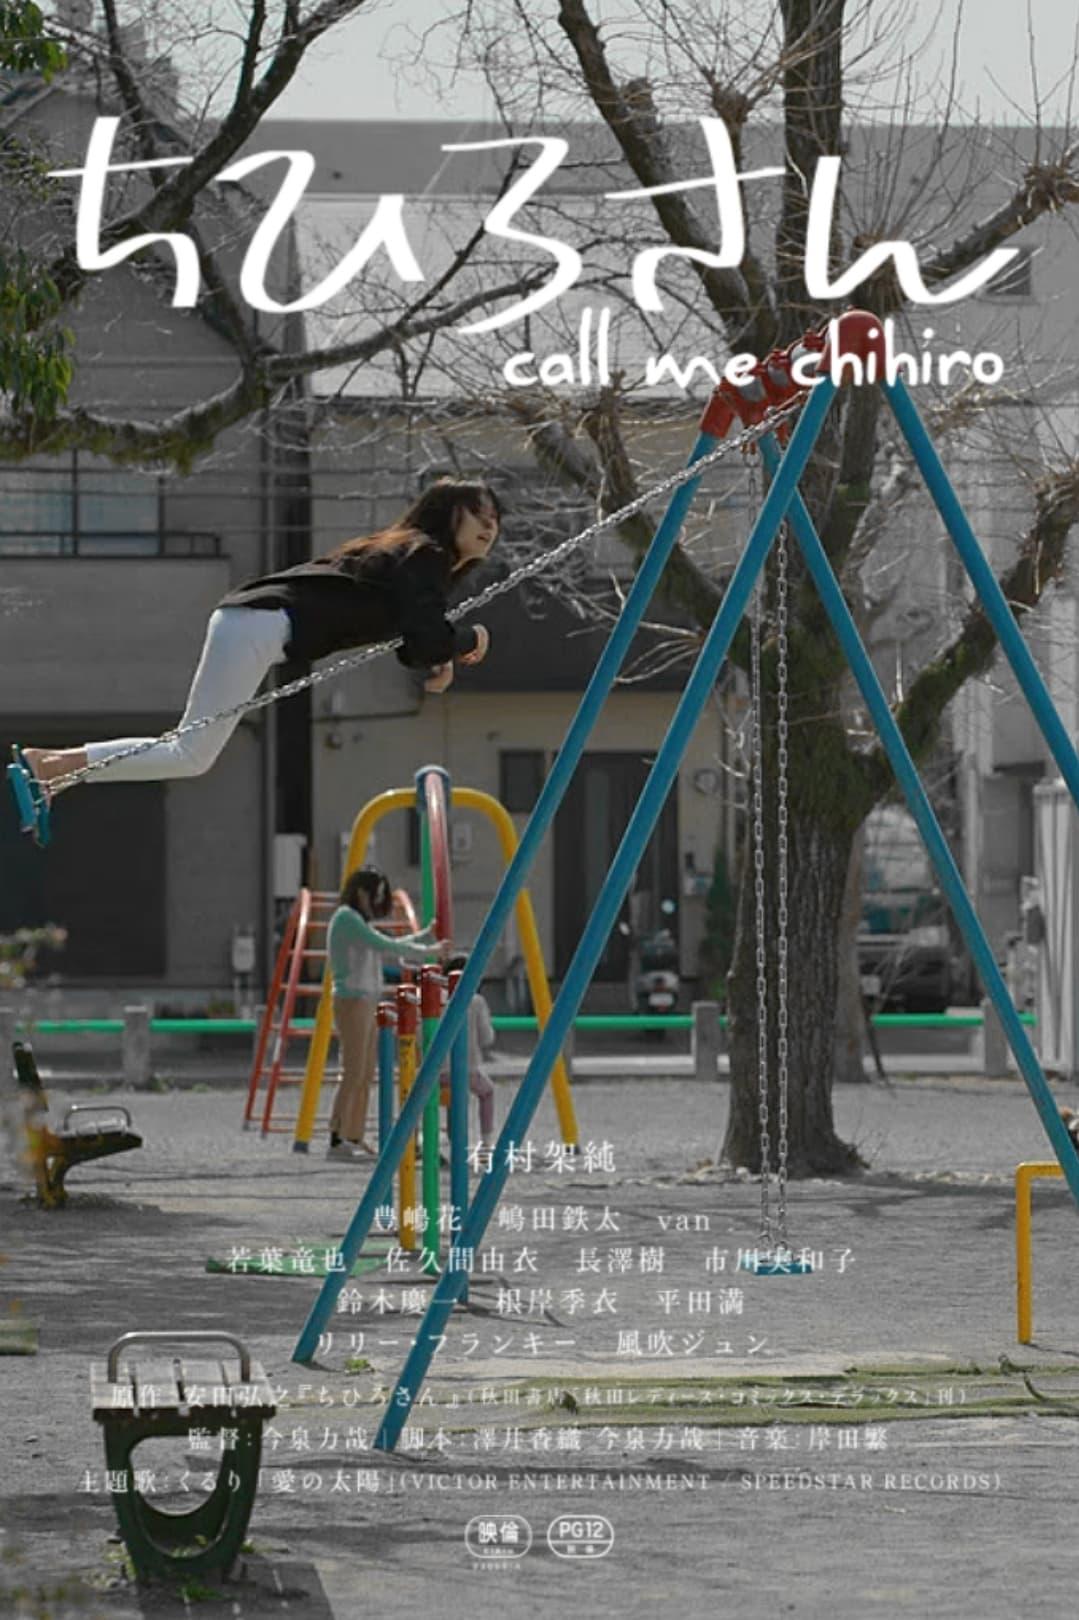 Call Me Chihiro poster